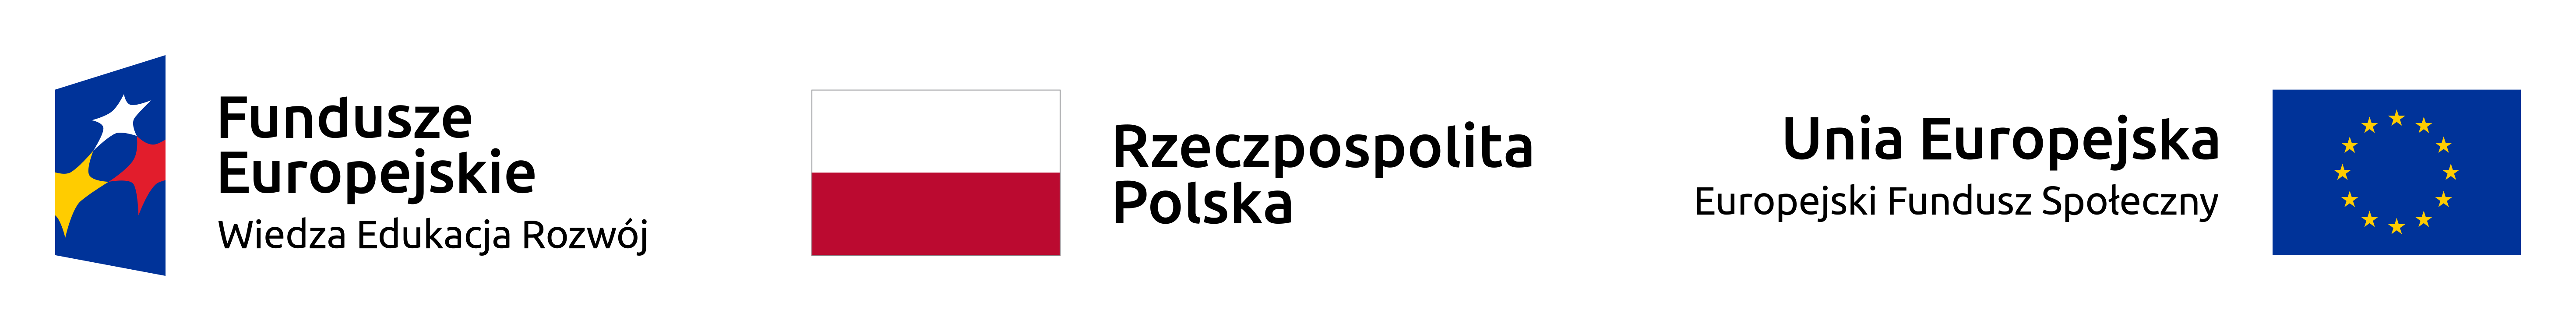 Po lewej logo z napisem: "Fundusze Europejskie Wiedza Edukacja Rozwój", po środku flaga Rzeczpospolitej Polskiej, a po prawej flaga Unii Europejskiej i napis: "Unia Europejska Europejski Fundusz Społeczny"